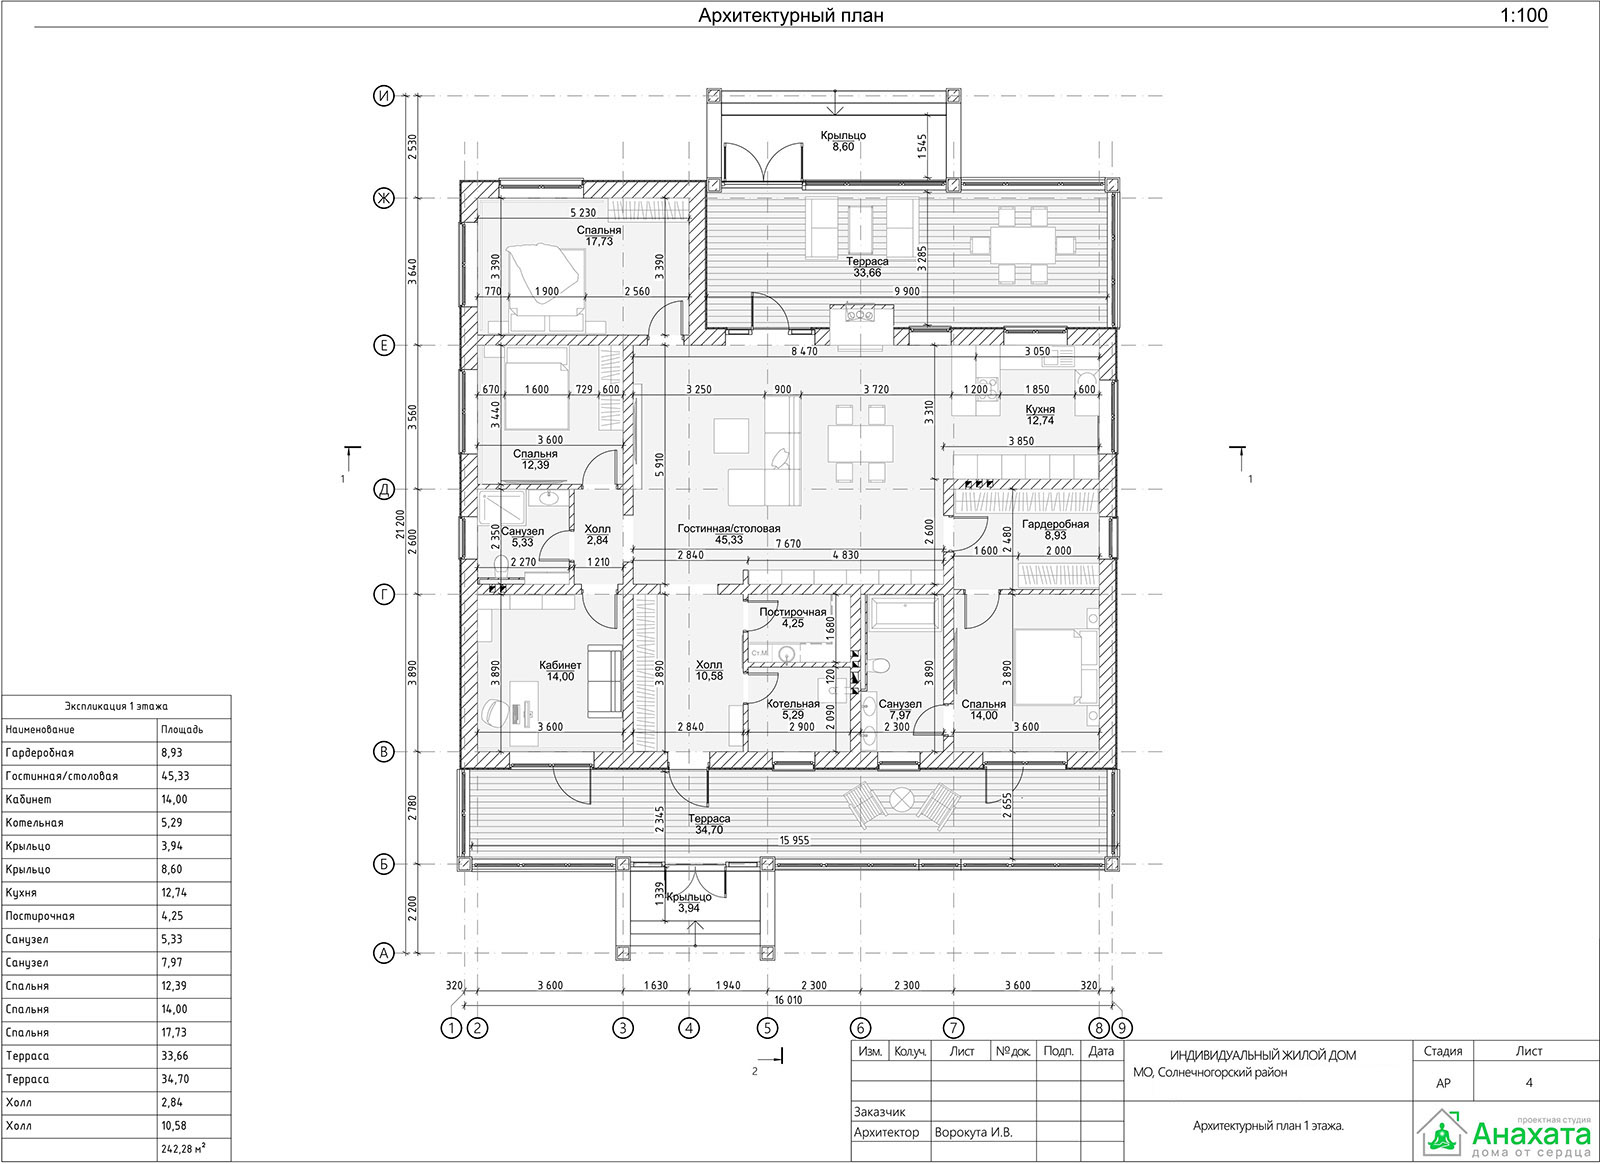 Архитектурный план первого этажа